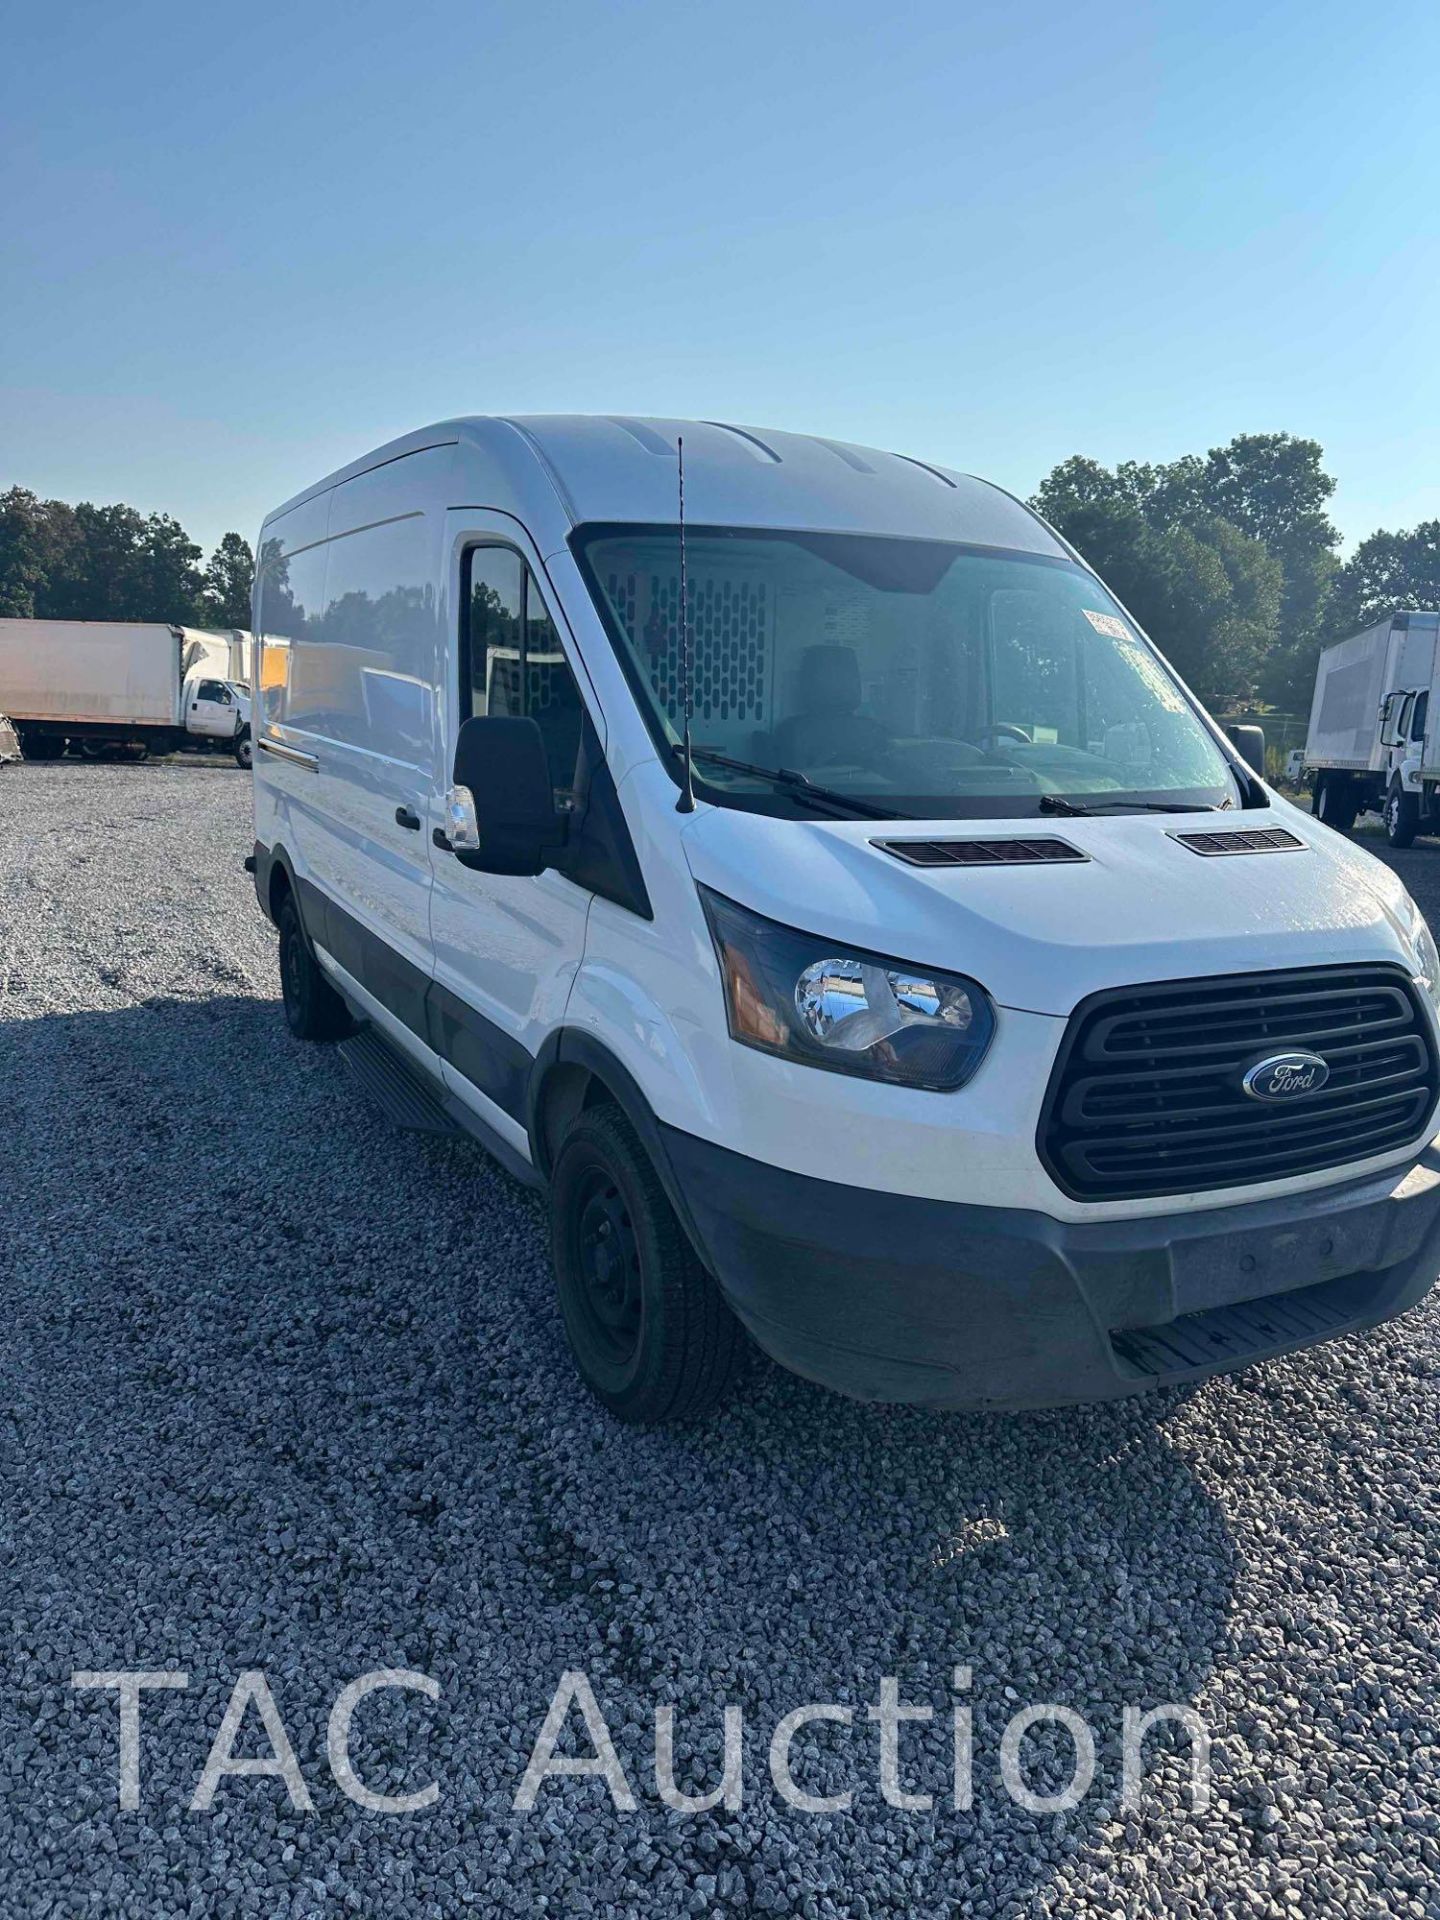 2019 Ford Transit 150 Cargo Van - Image 3 of 25